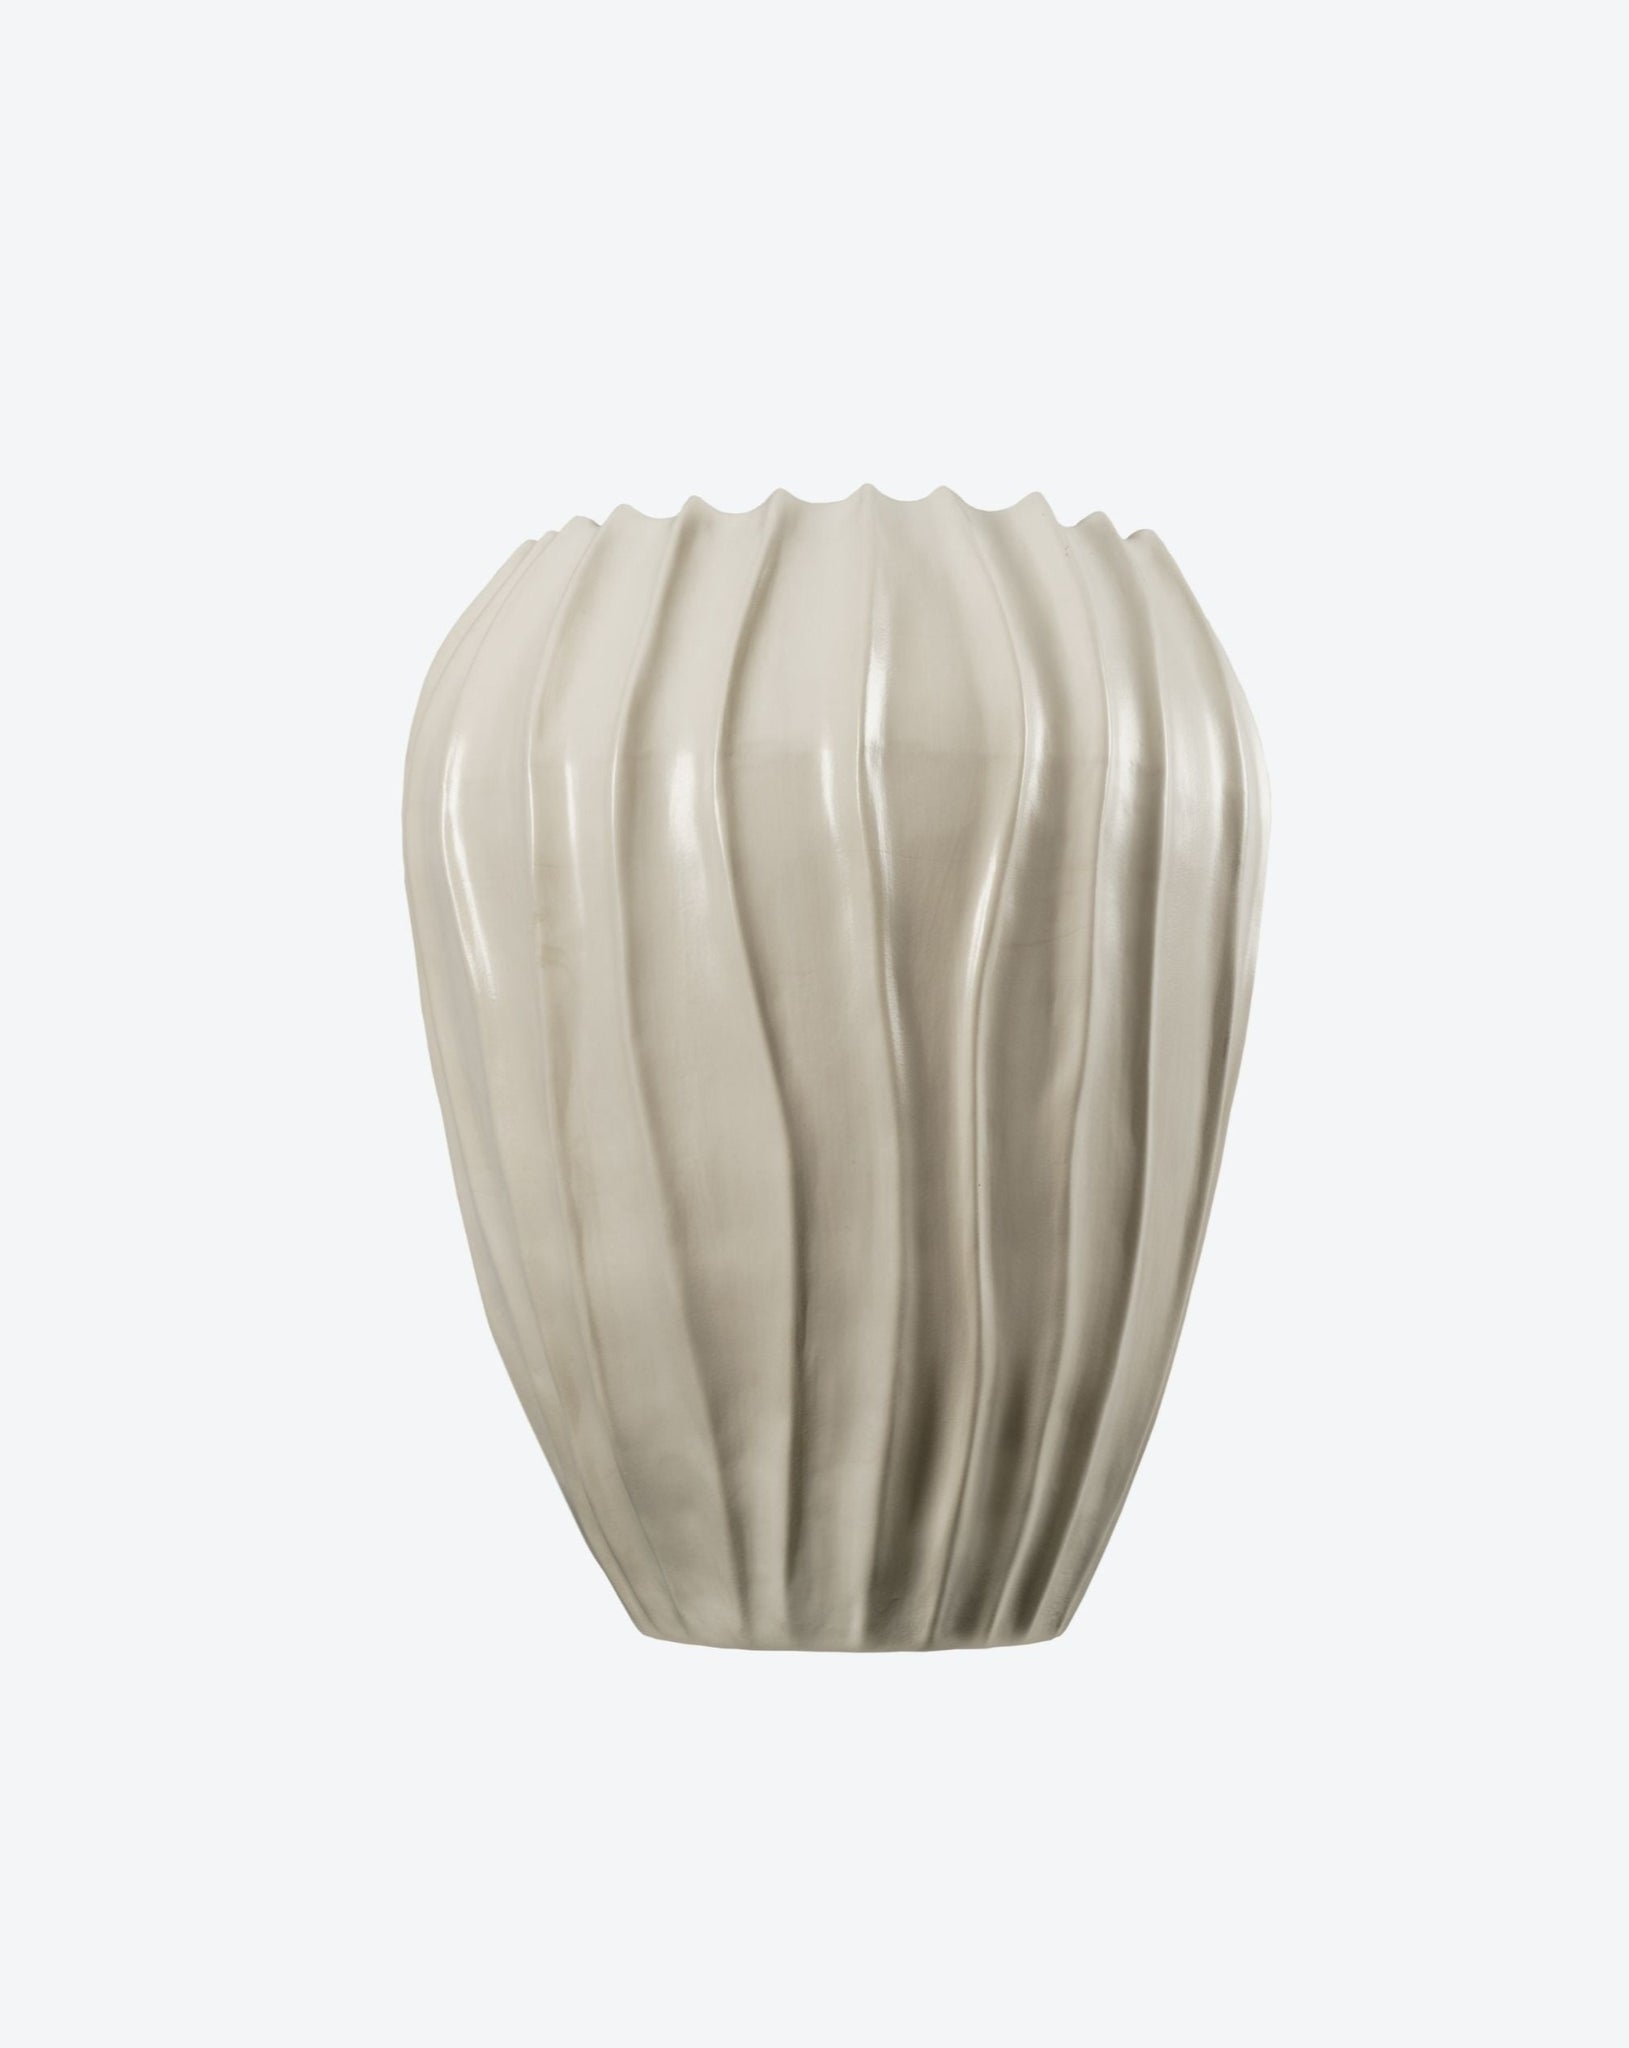 Large Cloak Vase